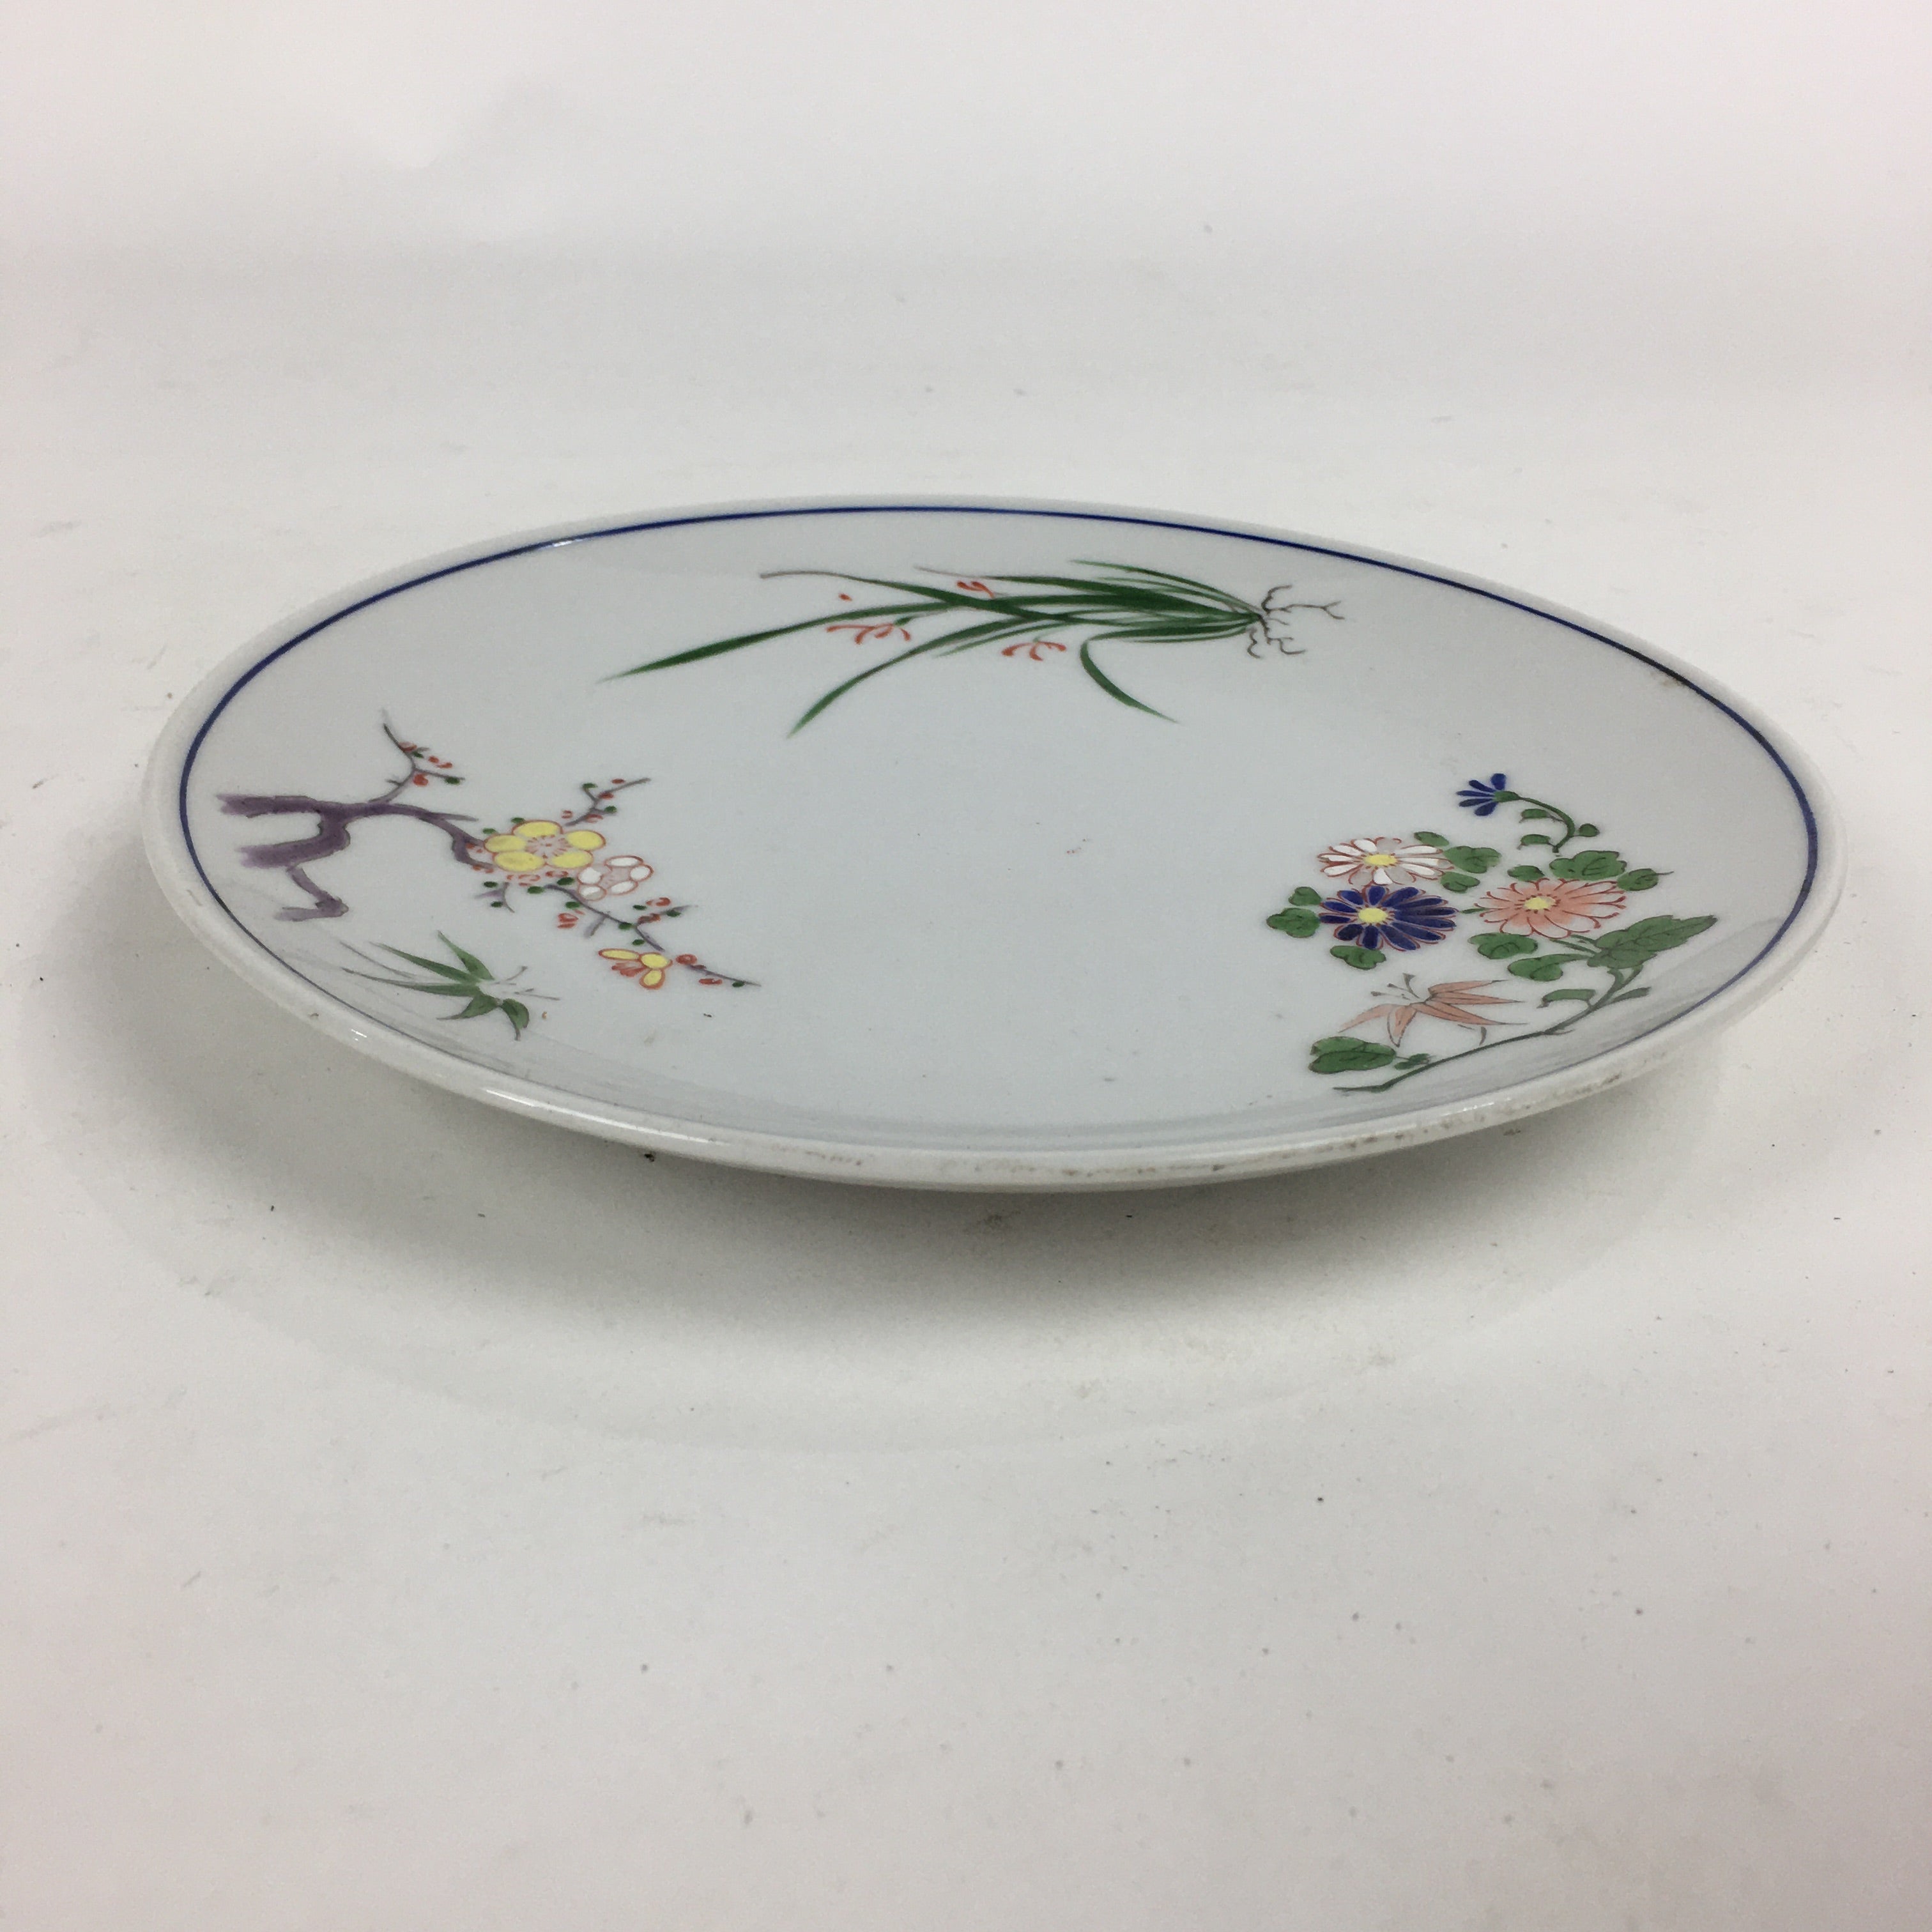 Japanese Porcelain Kutani Ware Plate Vtg White Flower Design Round Sara PP767